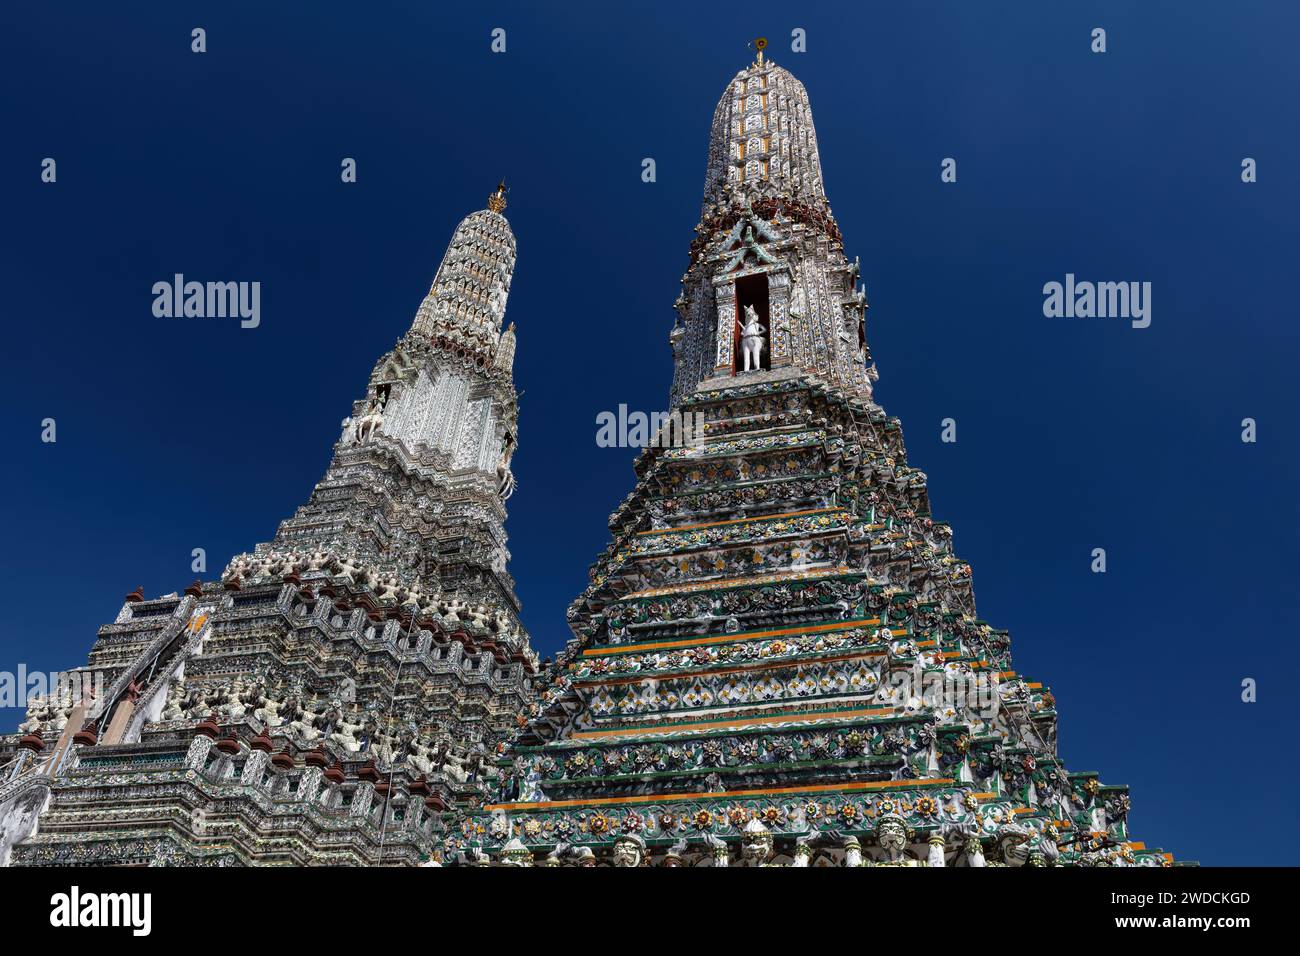 Due prangs al Wat Arun (Tempio dell'Alba) a Bangkok, Thailandia. Decorazioni intricate sulle strutture; dietro il cielo blu profondo. Foto Stock